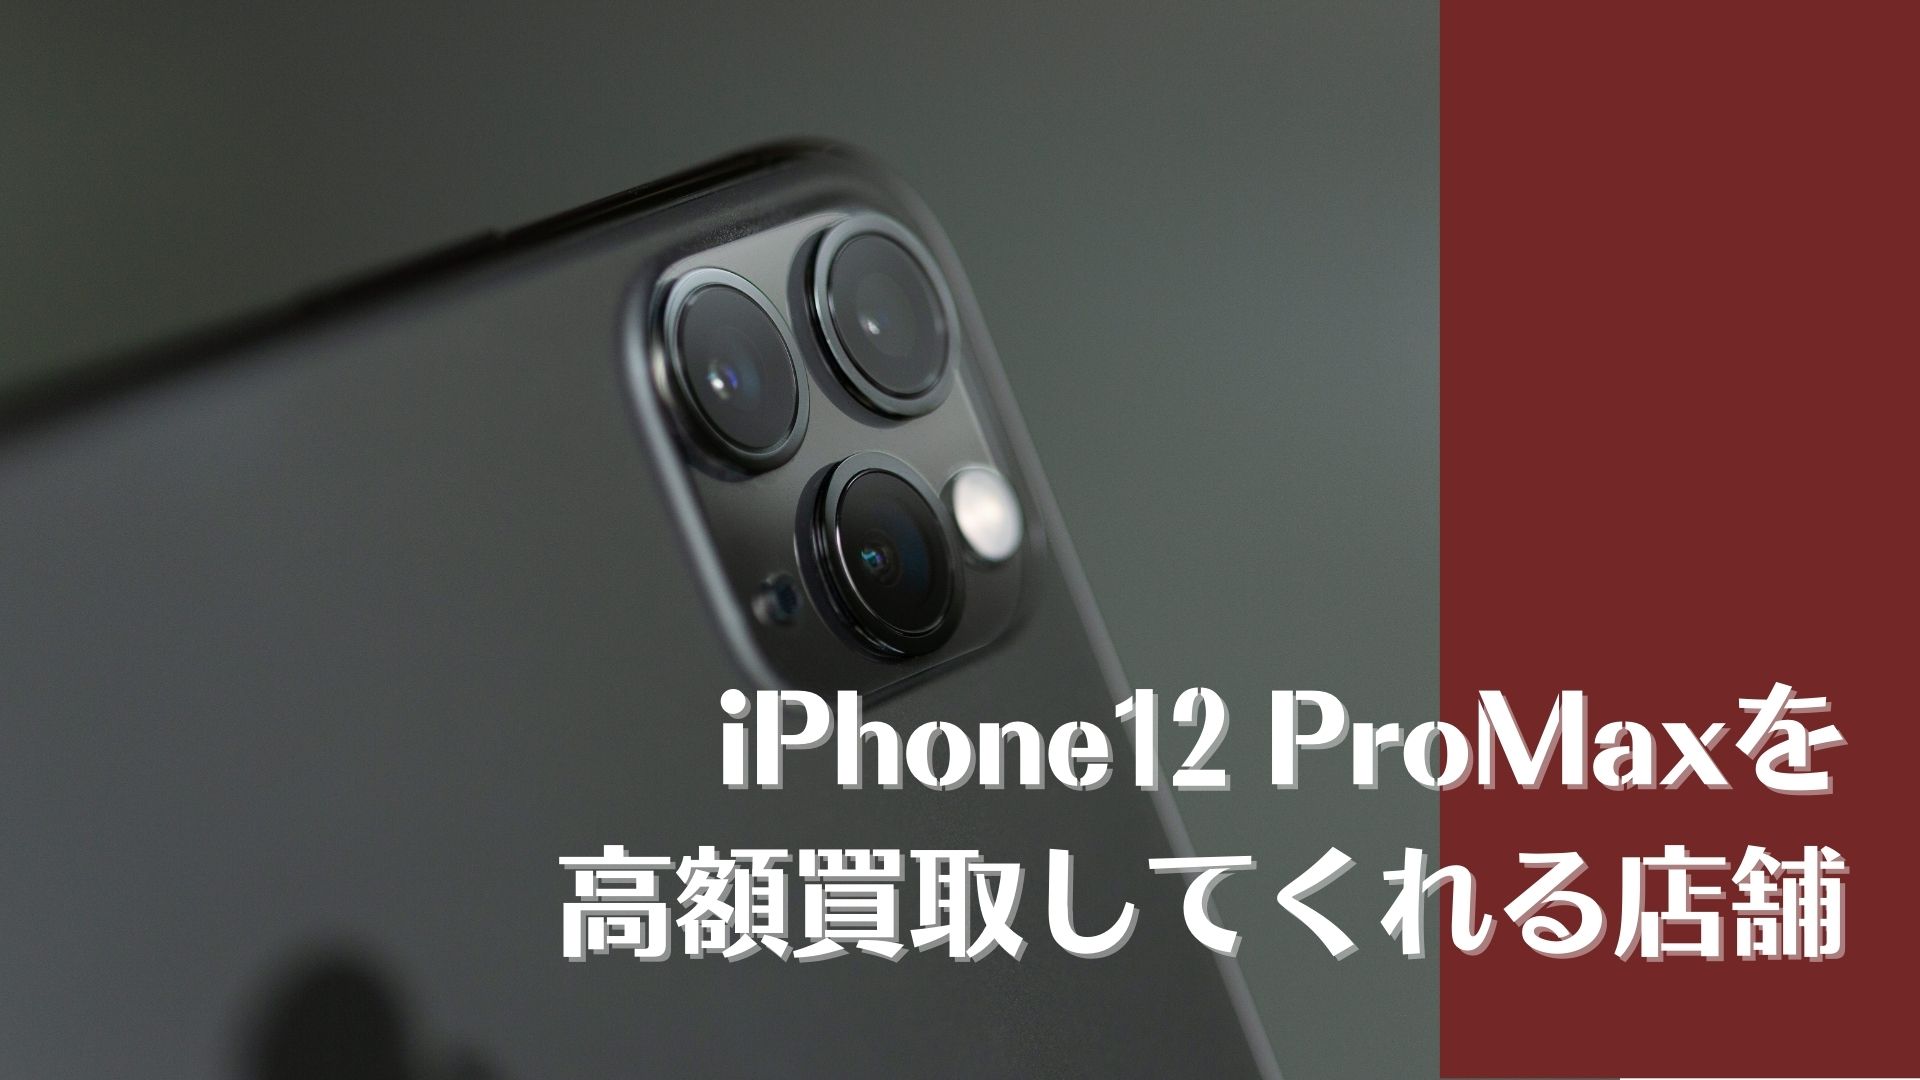 iPhone12 Pro Maxの買取相場とおすすめ買取店7選 - 買取一括比較